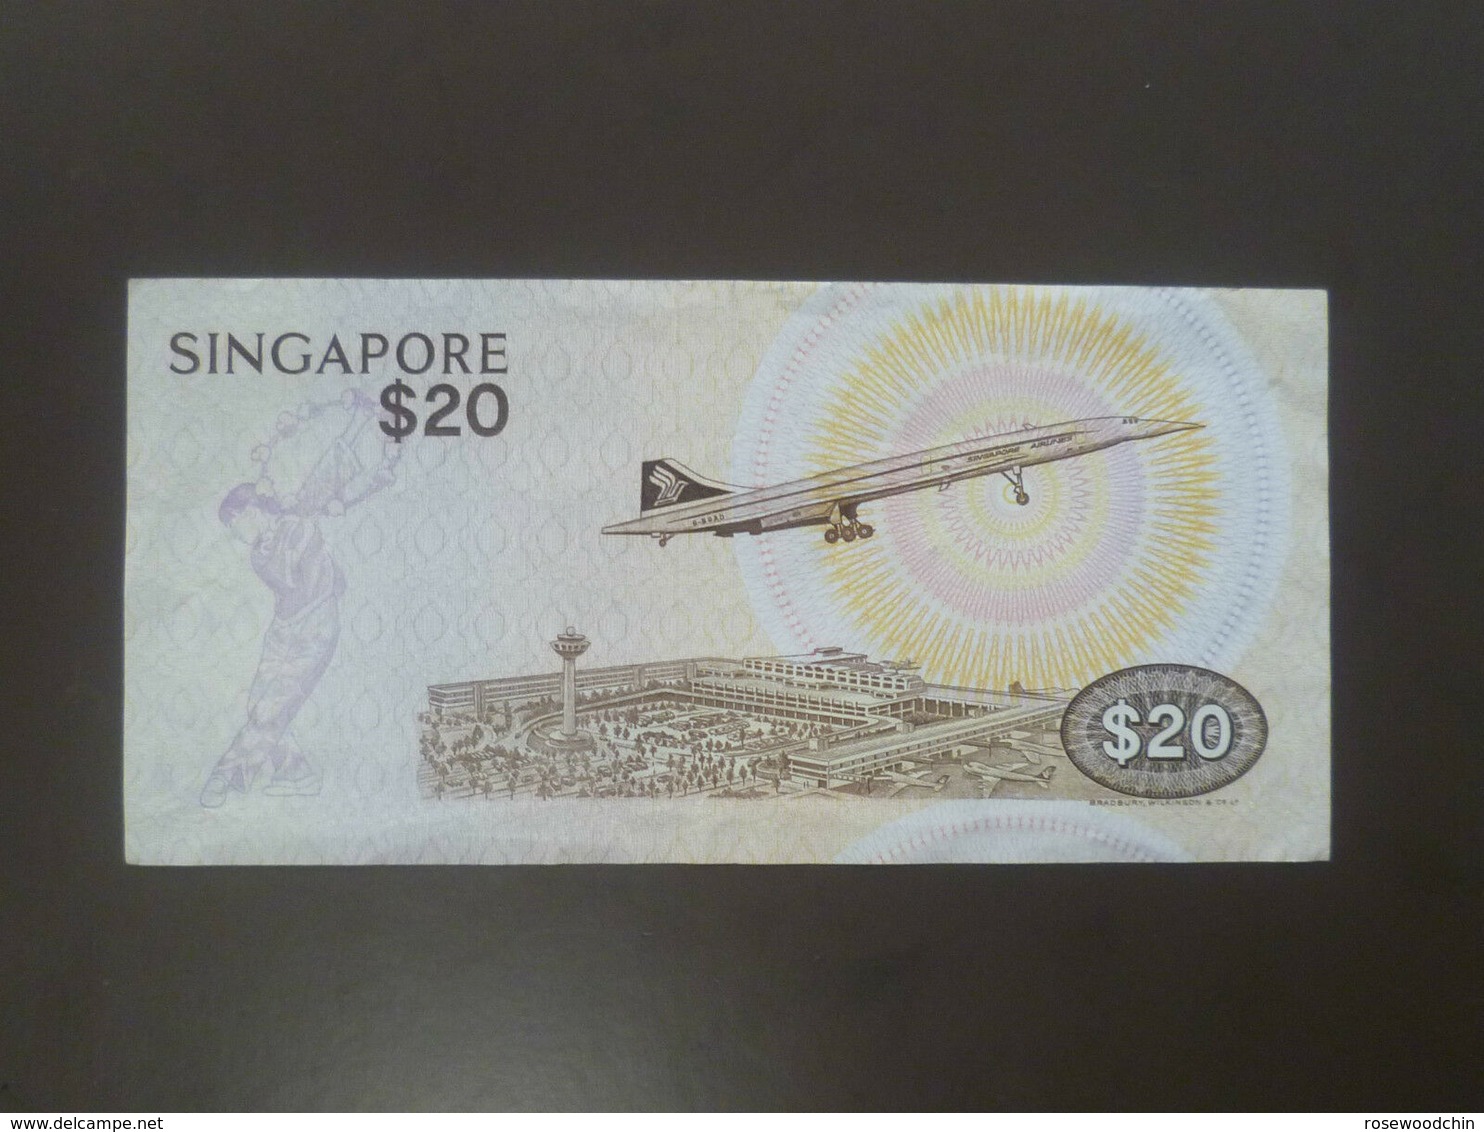 VINTAGE ! SINGAPORE $20 BIRD SERIES PAPER MONEY BANKNOTE A/79-832910 (#51A) "A" Prefix - Singapour